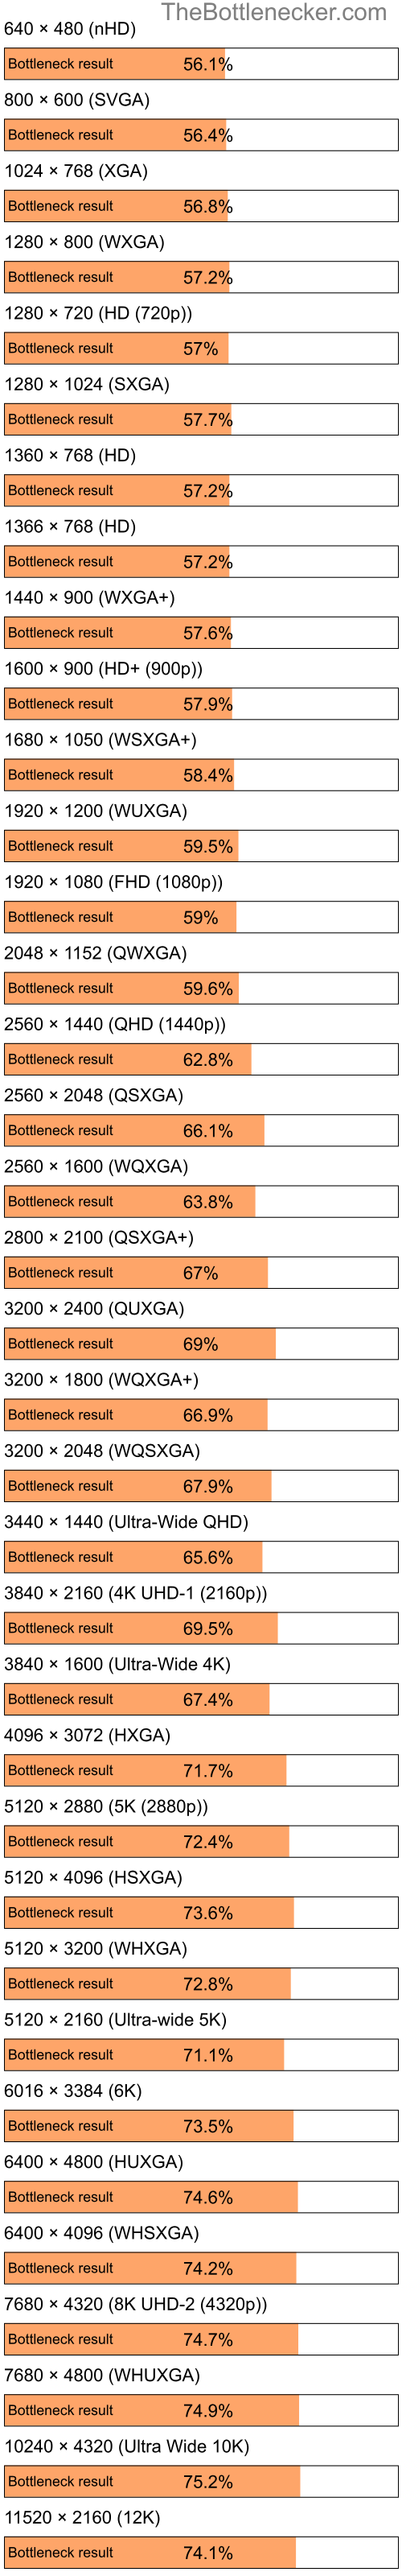 Bottleneck results by resolution for Intel Celeron and NVIDIA GeForce 210 in General Tasks